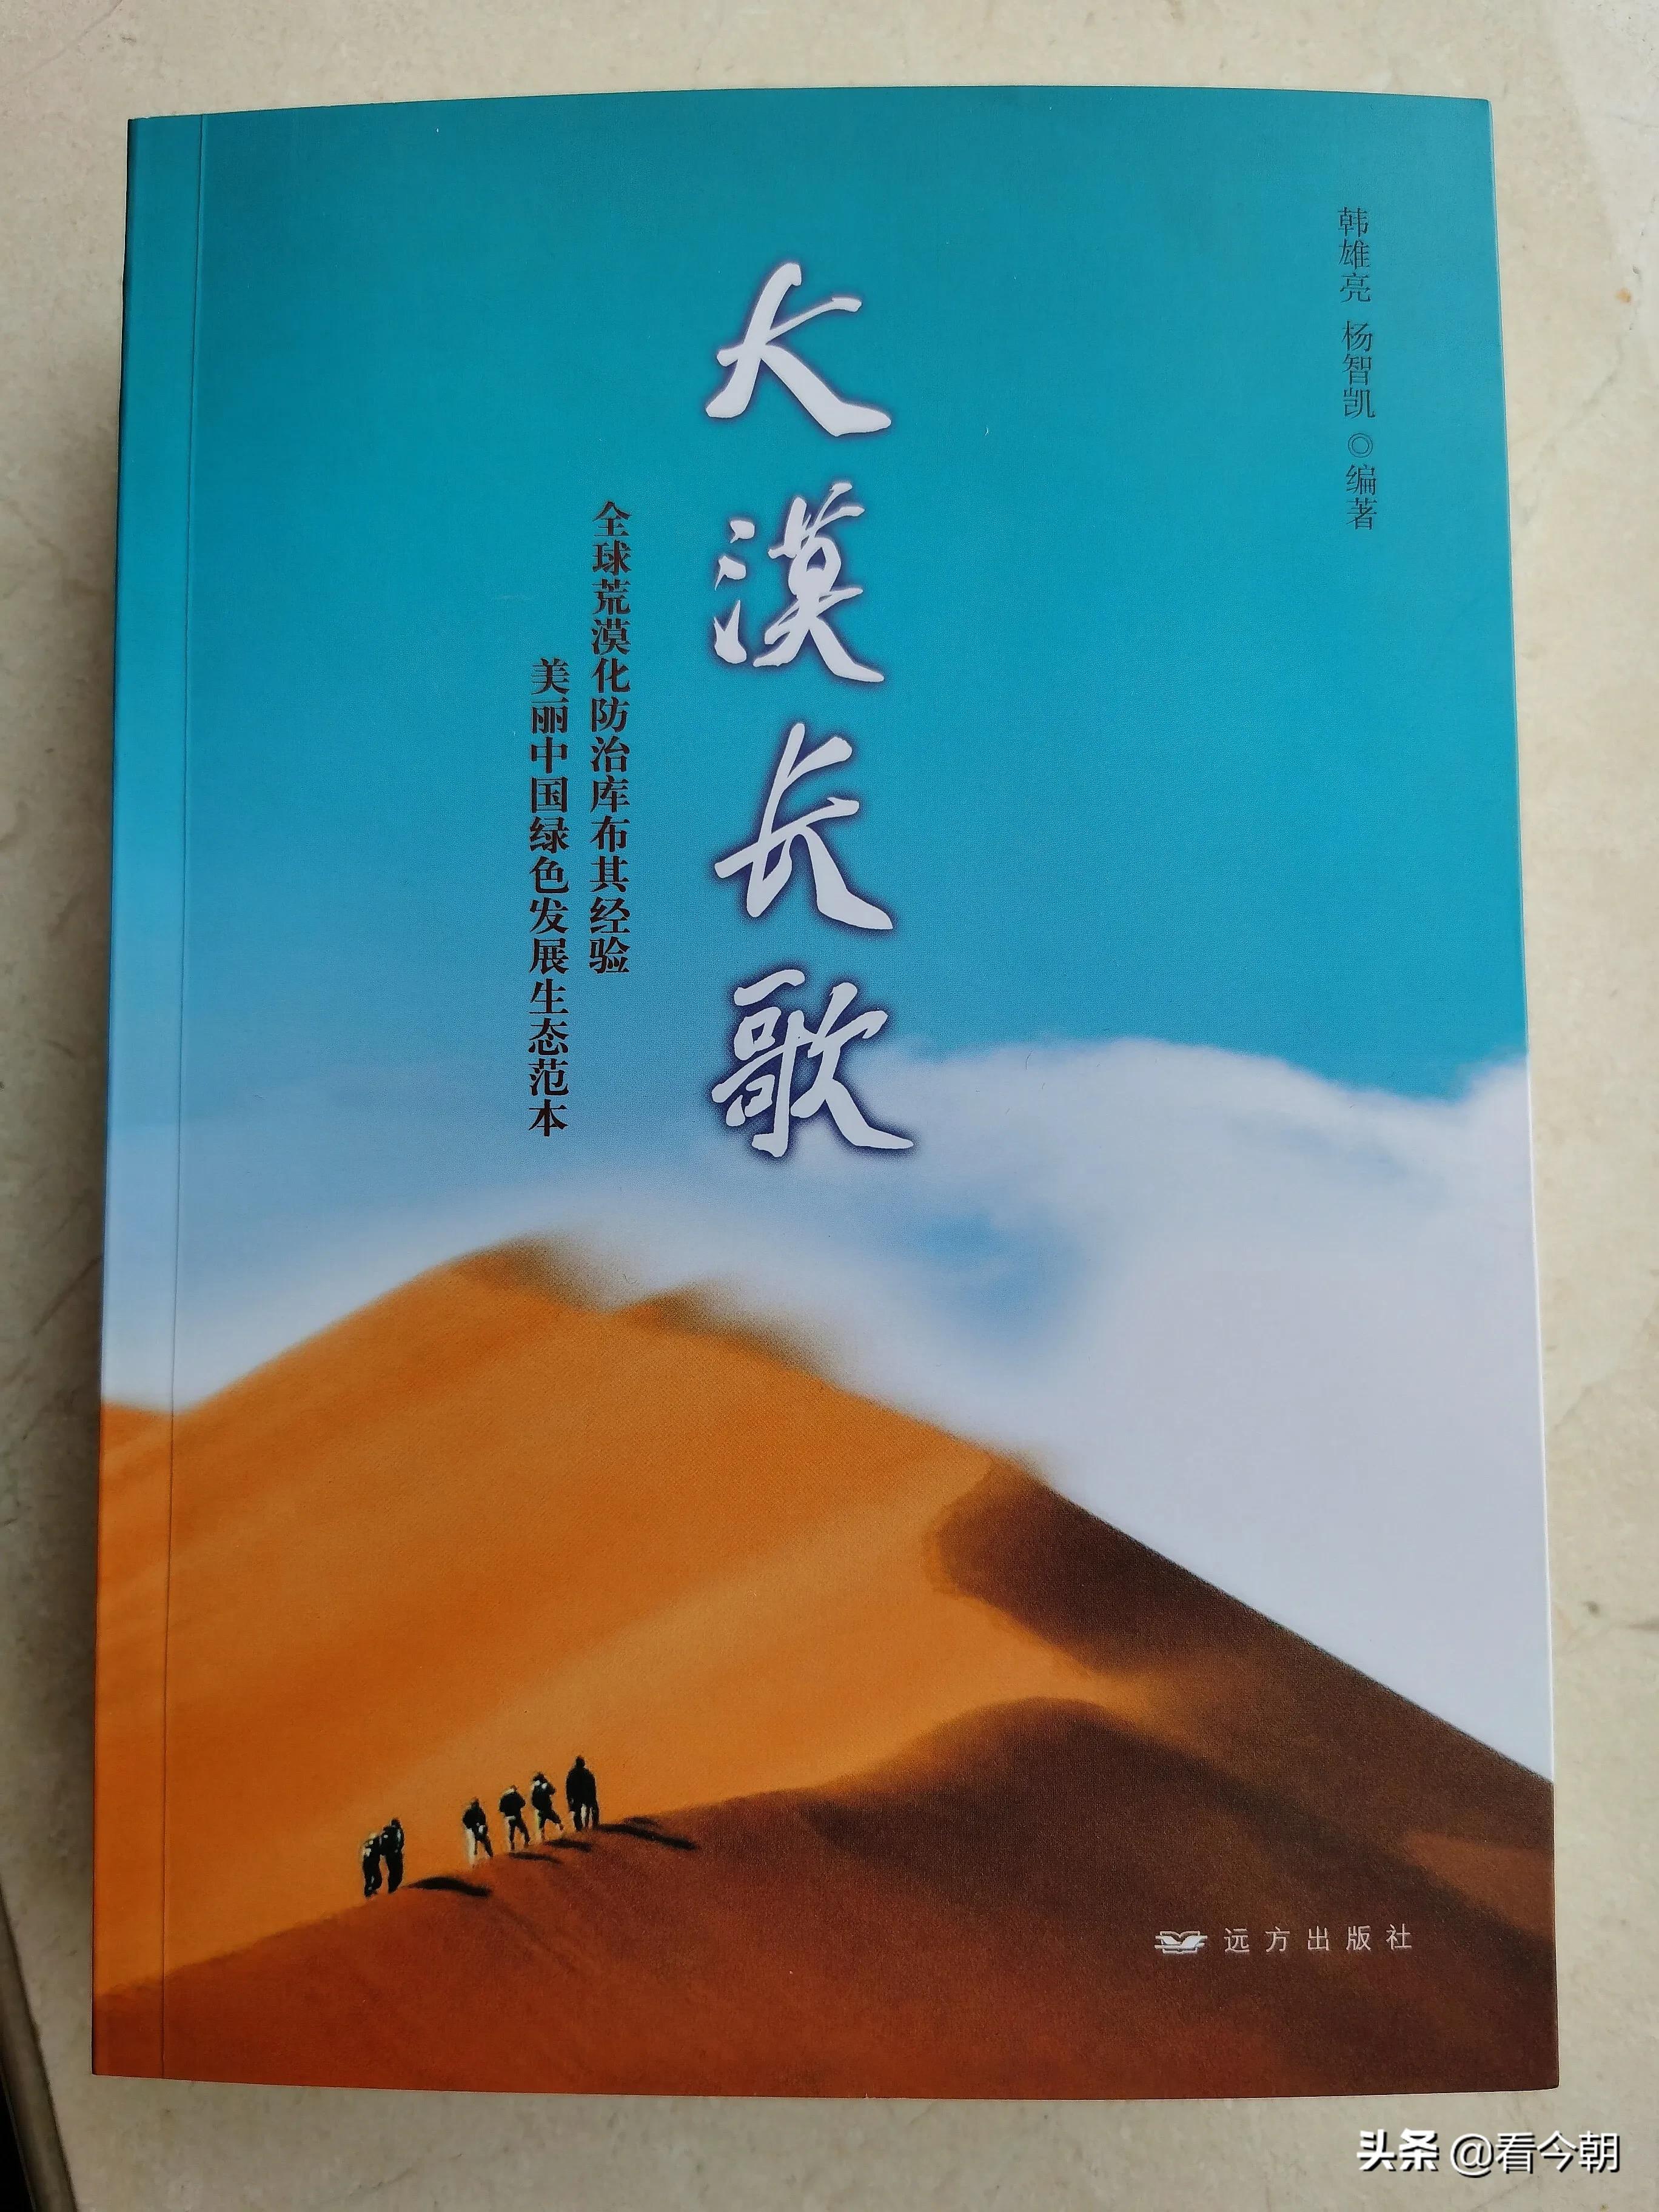 刘明祖致信报告文学《大漠长歌》作者